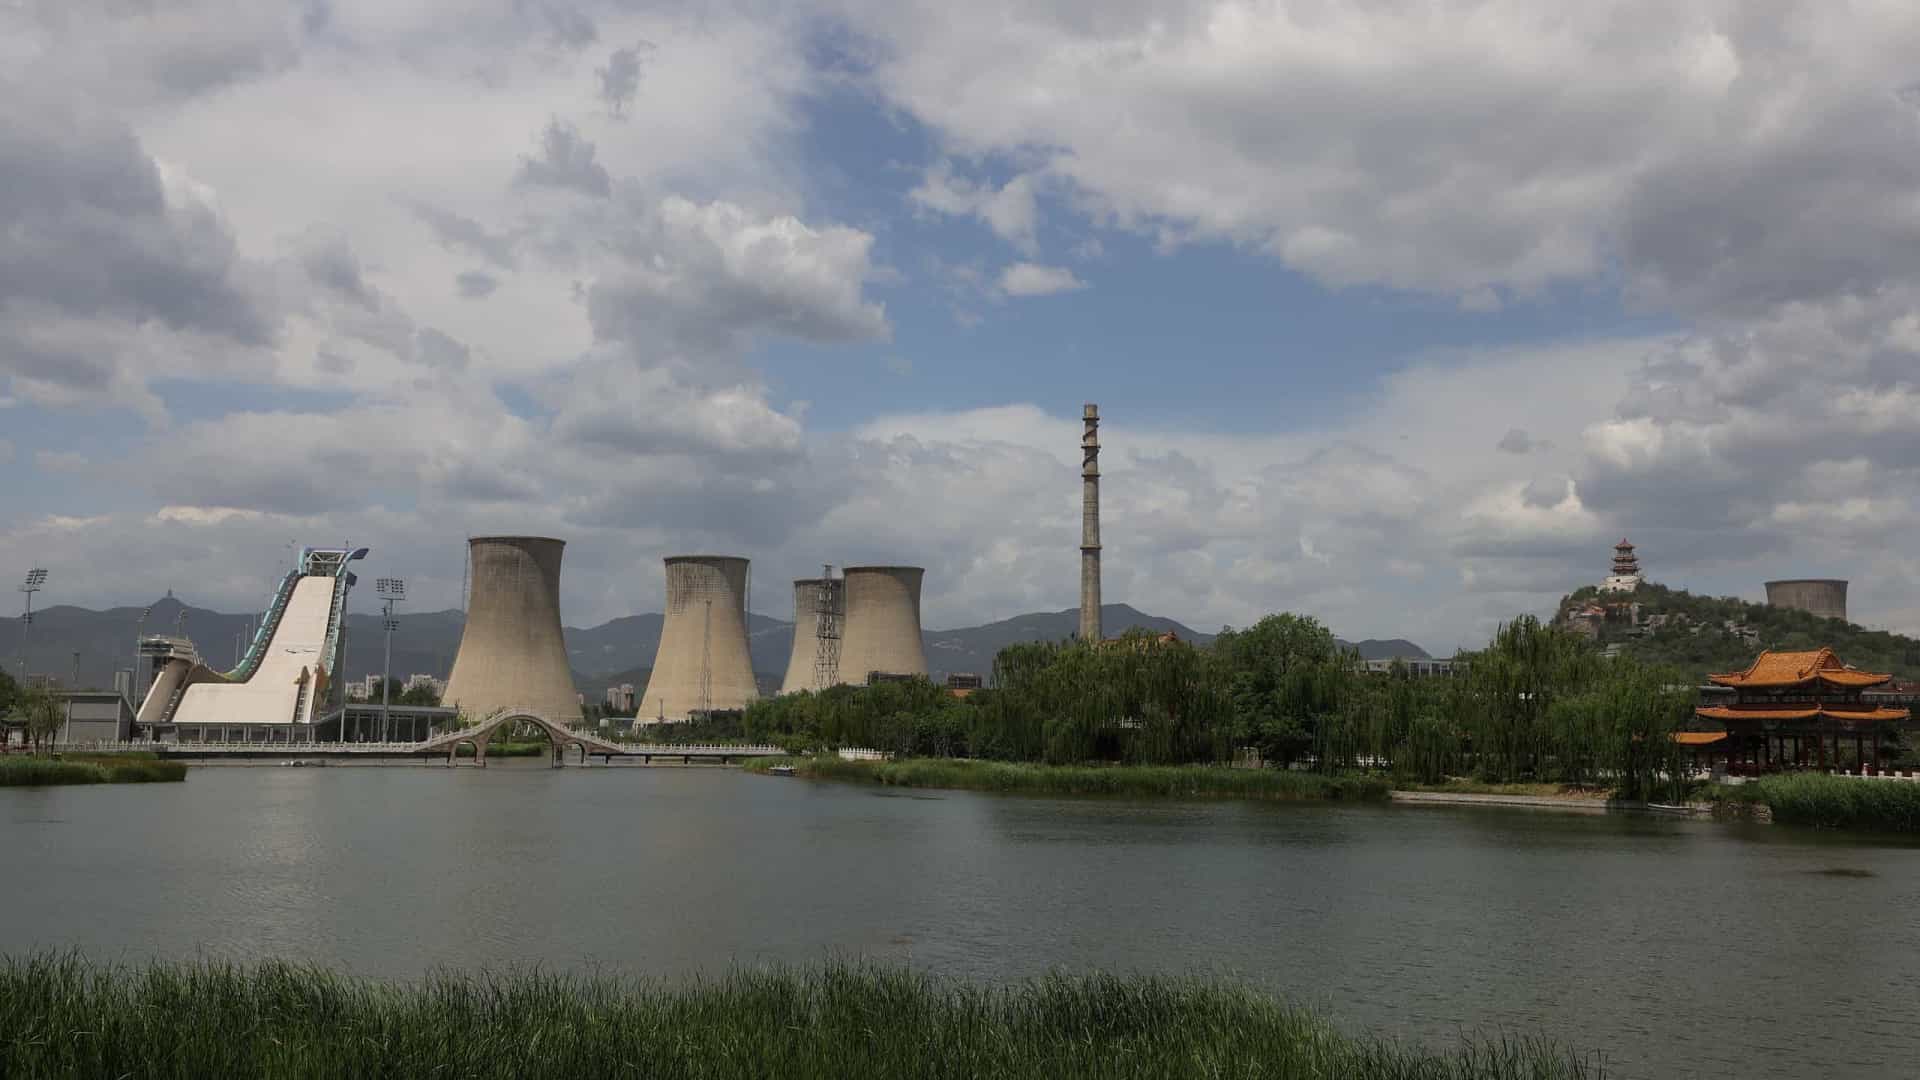 Maior siderurgia de Pequim convertida em parque ilustra ambições climáticas da China